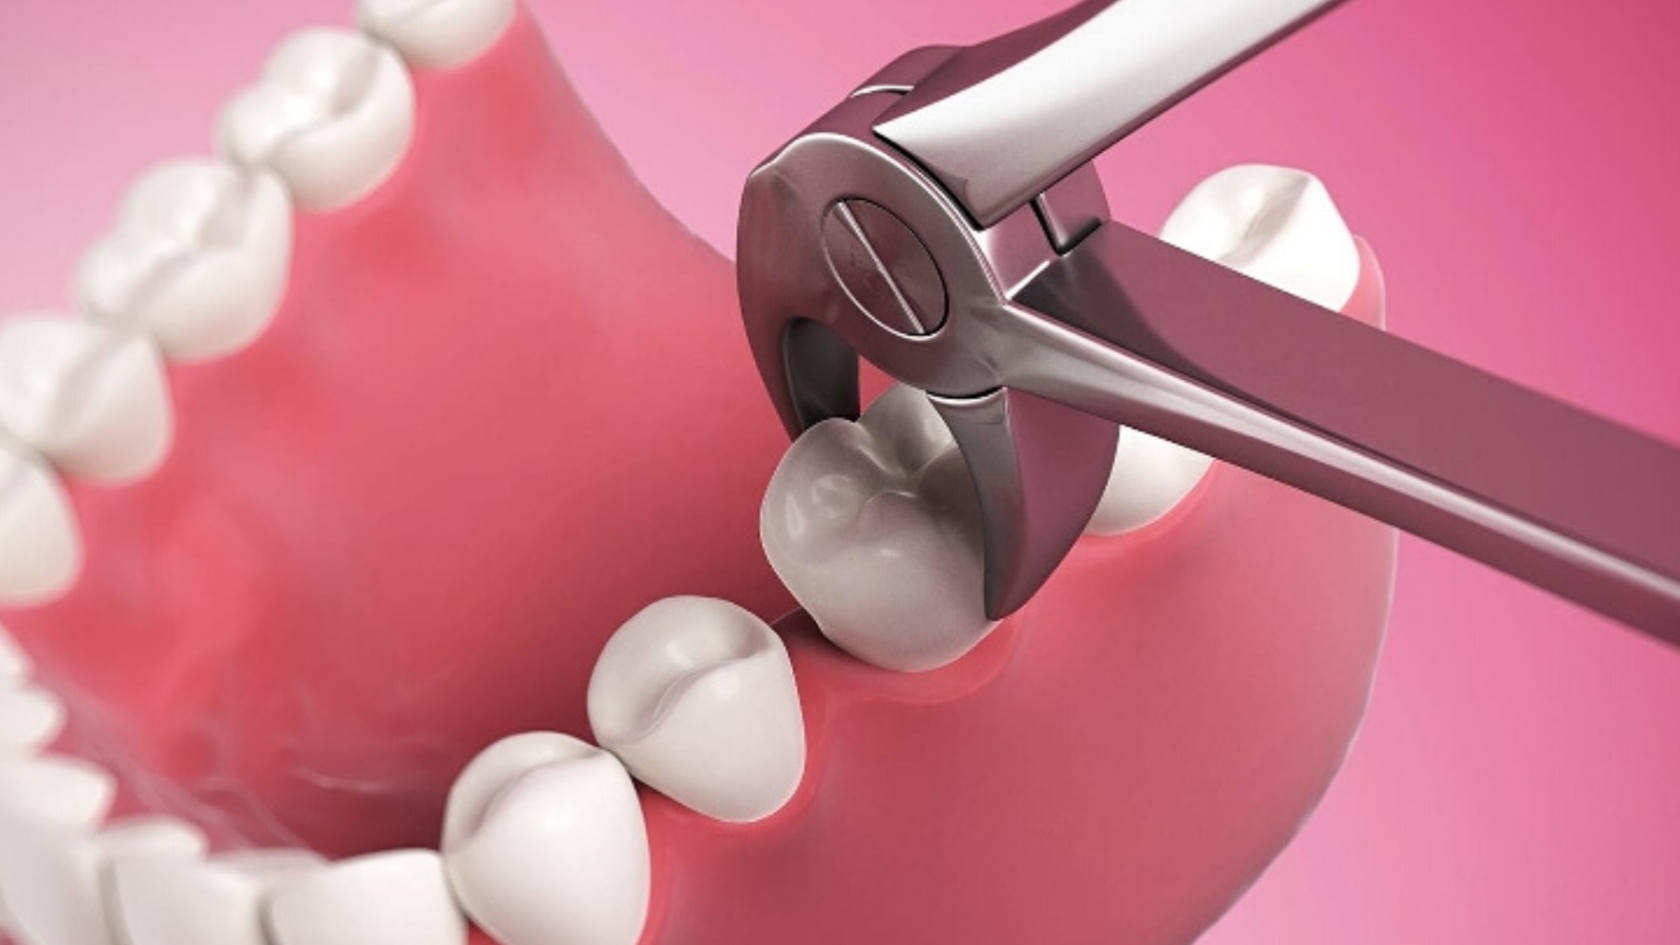 Tooth extraction. Хирургическая стоматология.